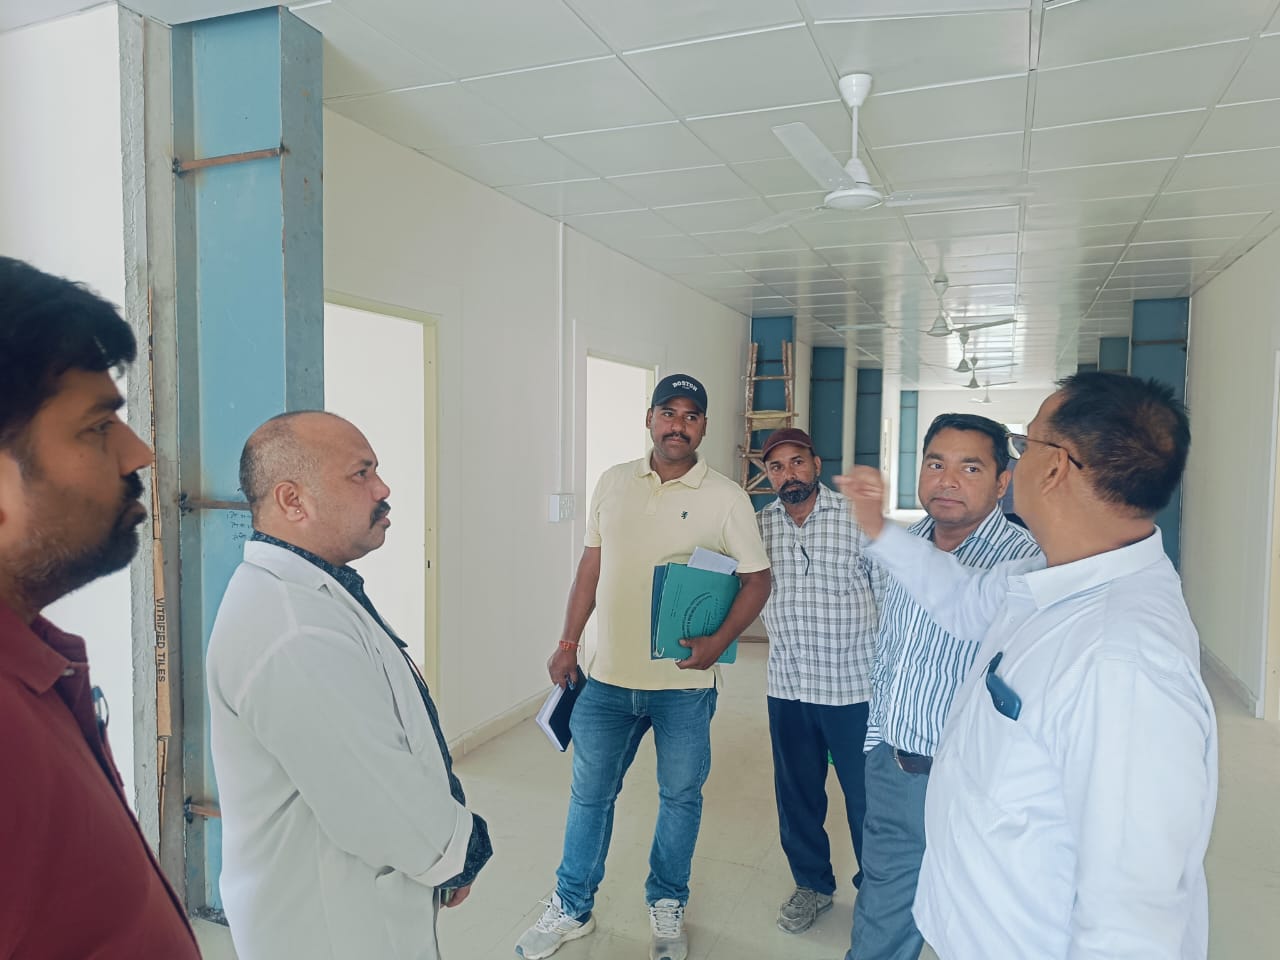 बेस चिकित्सालय में स्किल सेंटर निर्माण कार्य का भारत सरकार की टीम ने किया निरीक्षण